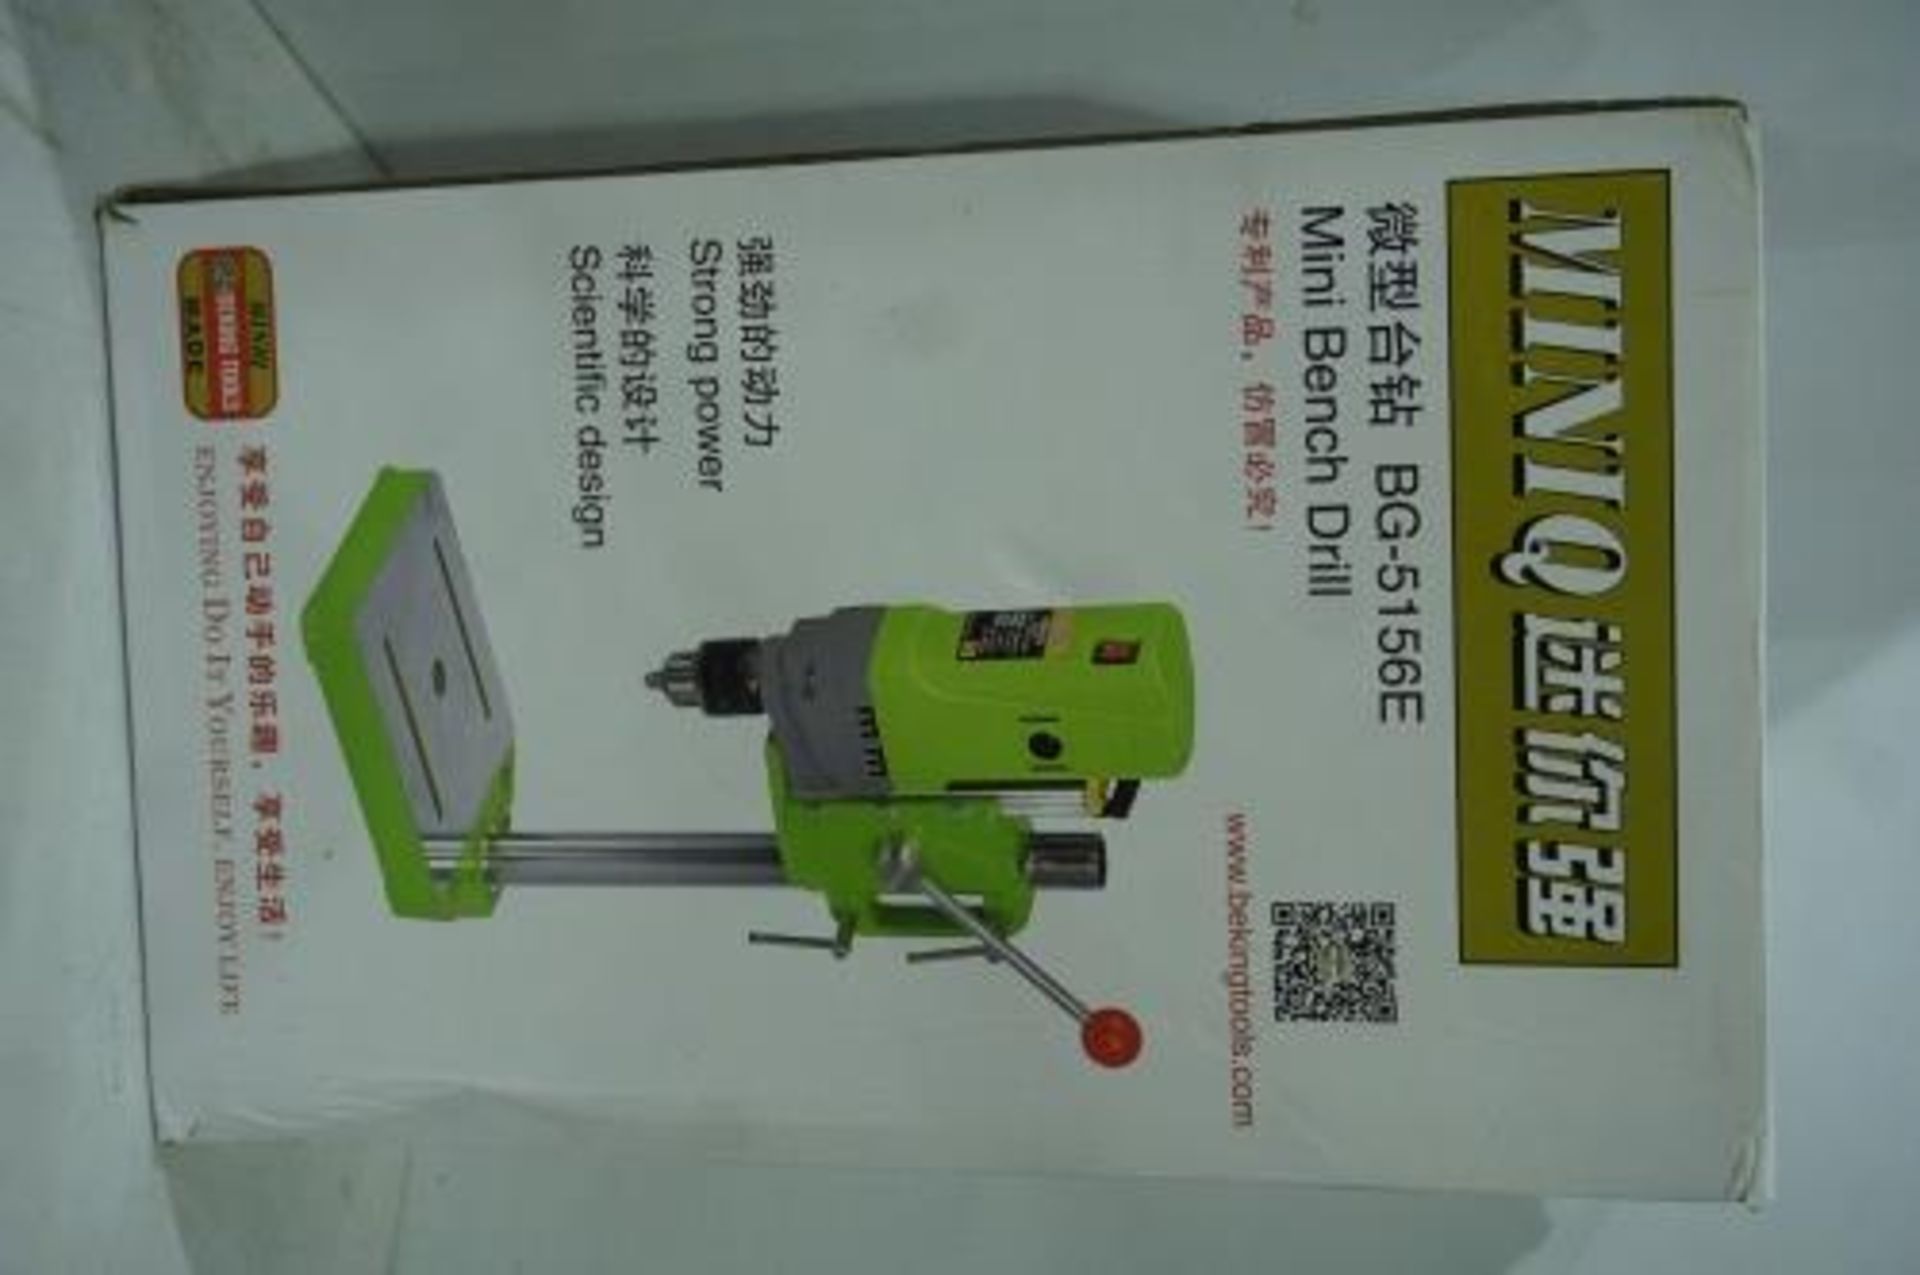 Mini Q mini bench drill, BG-5156E, 2202V, 1 - 13mm - New in box (TC7)